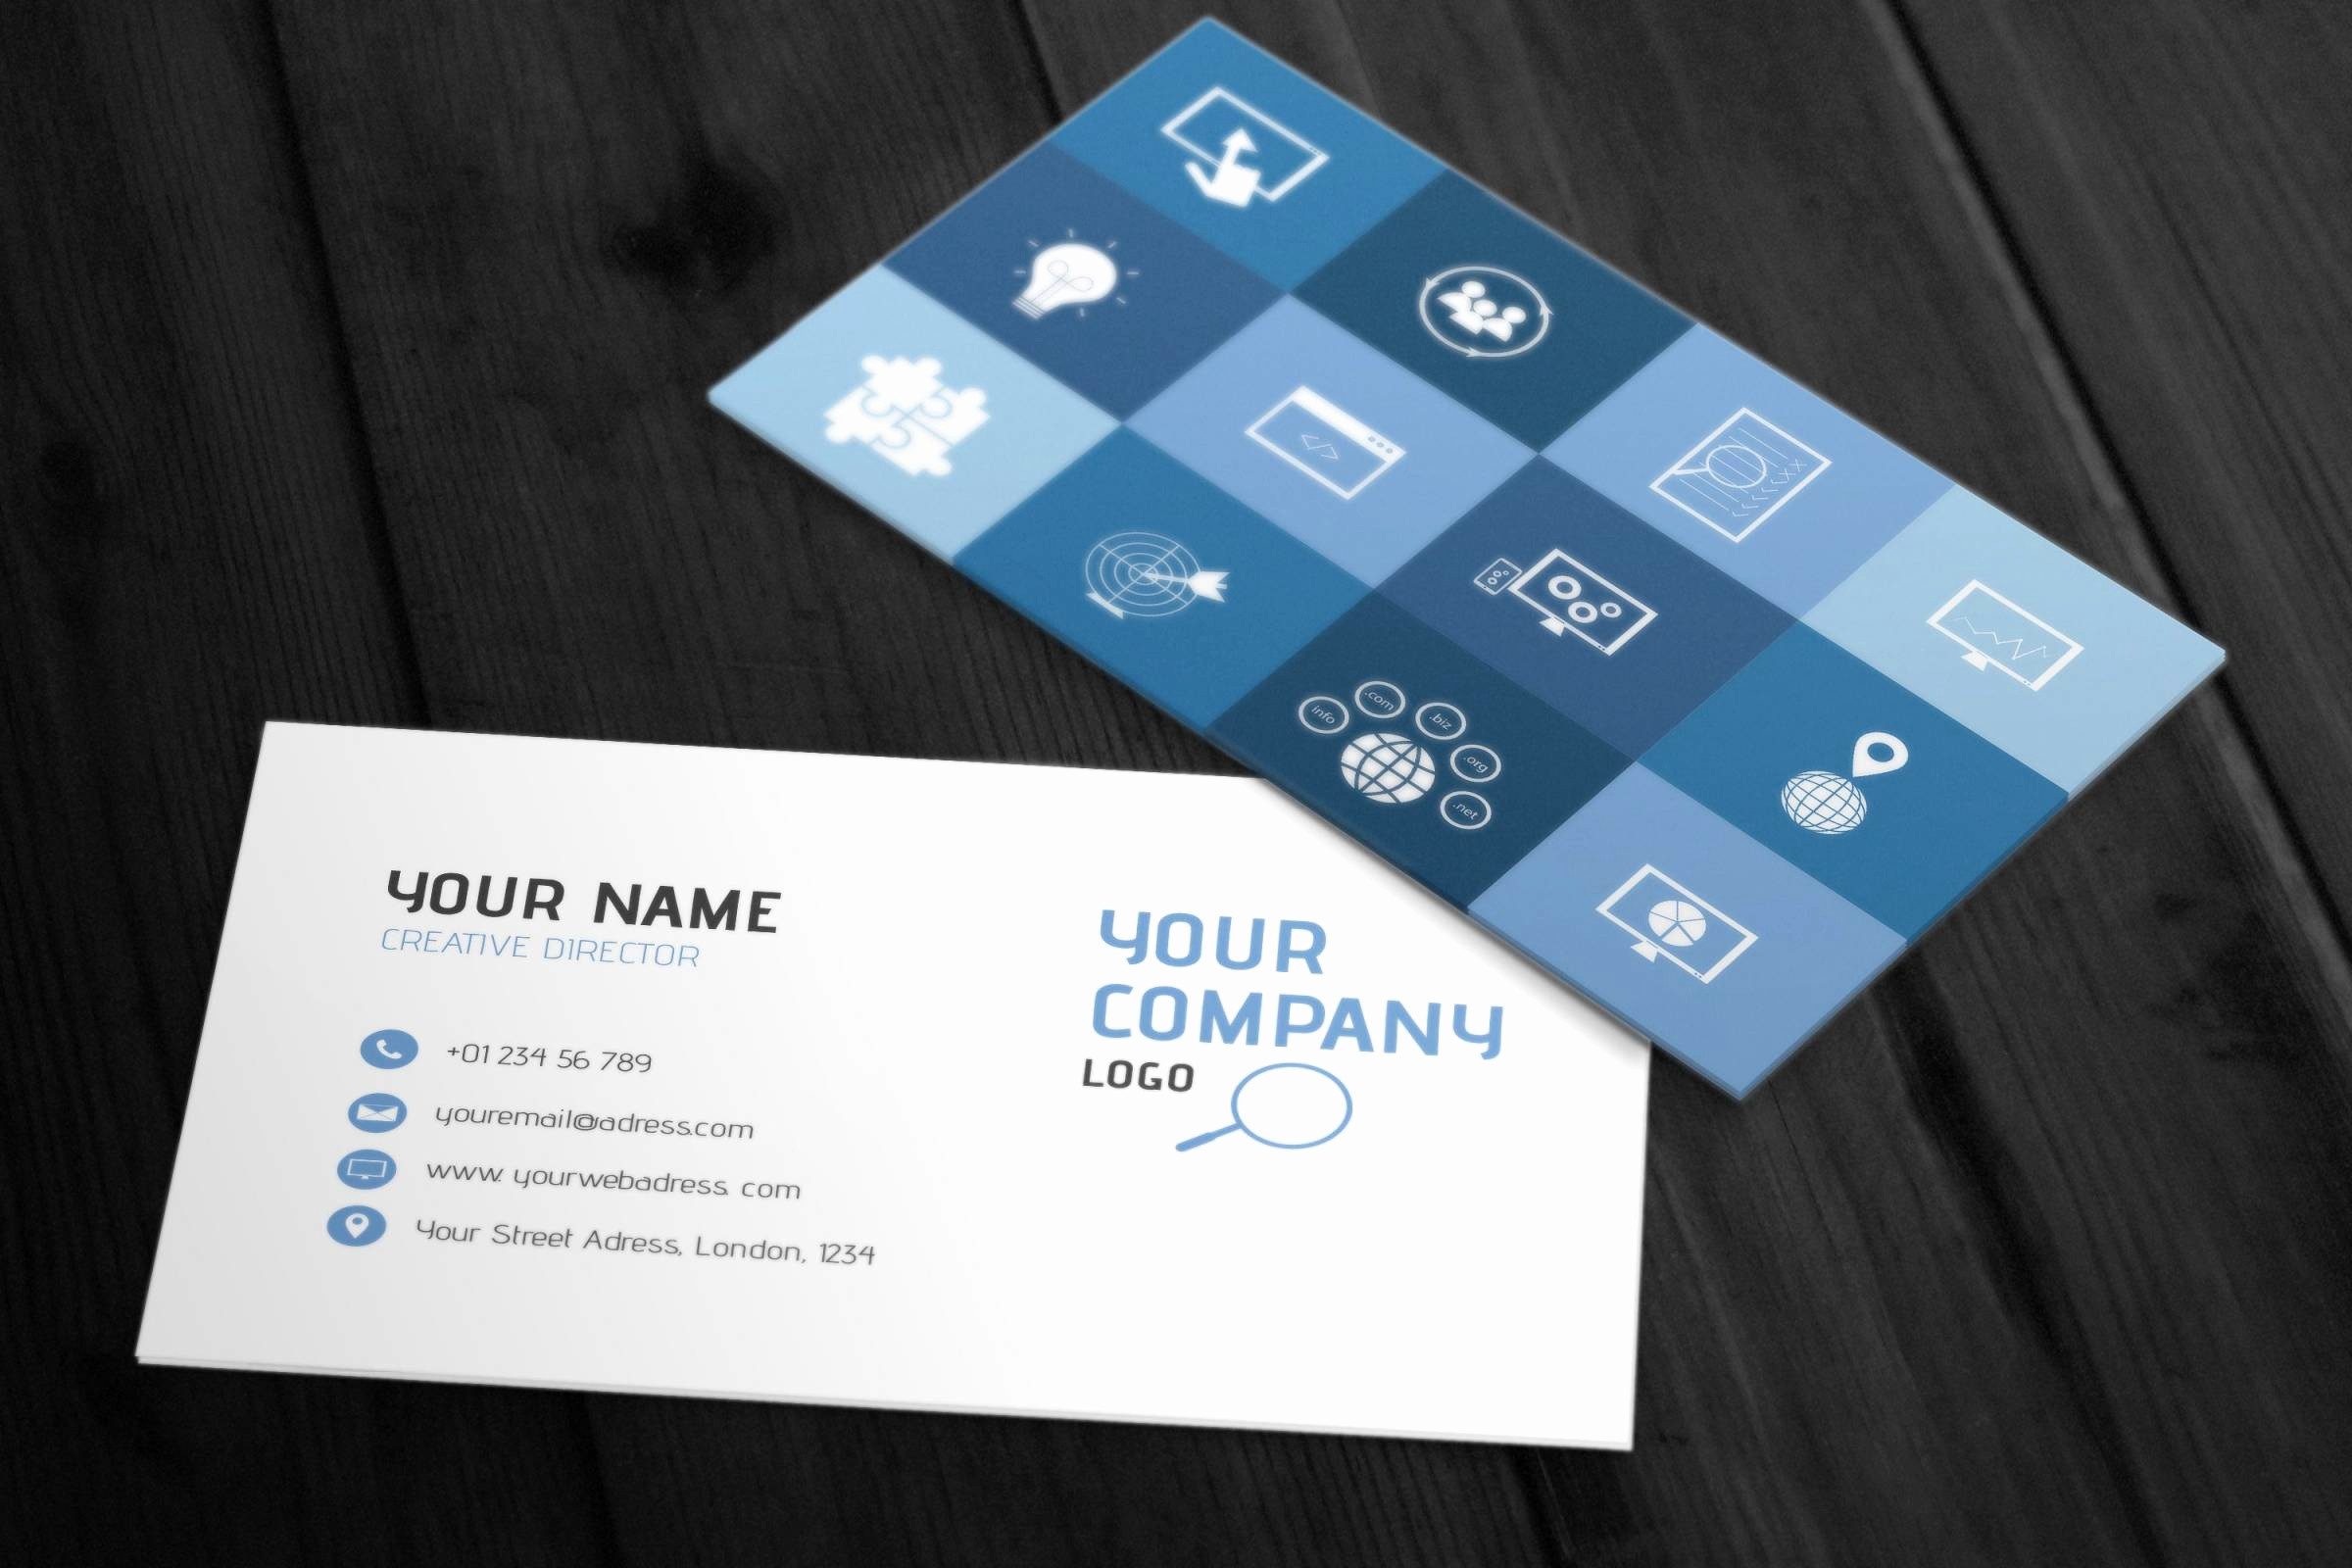 web developer business card basic web designer business card beautiful 2019 web design business cards of web developer business card